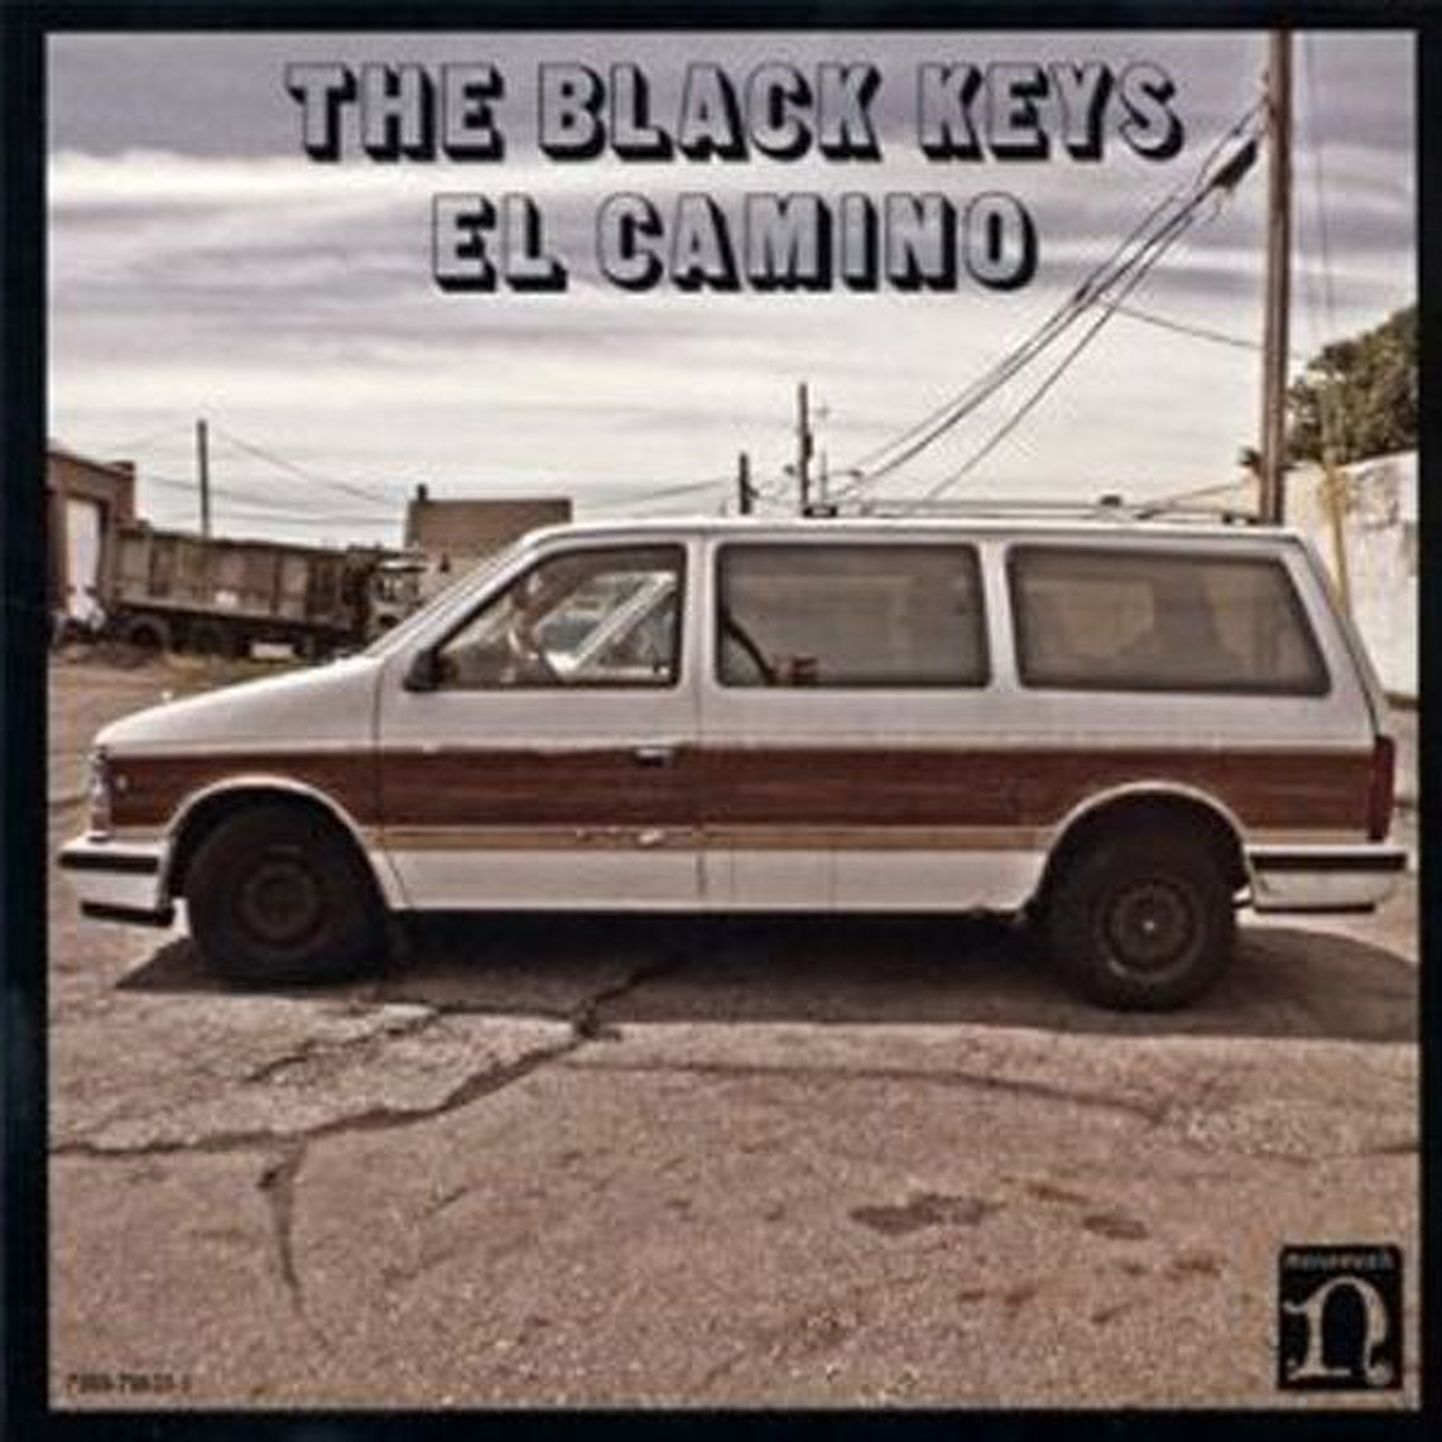 The Black Keys
El Camino 
(Nonesuch)